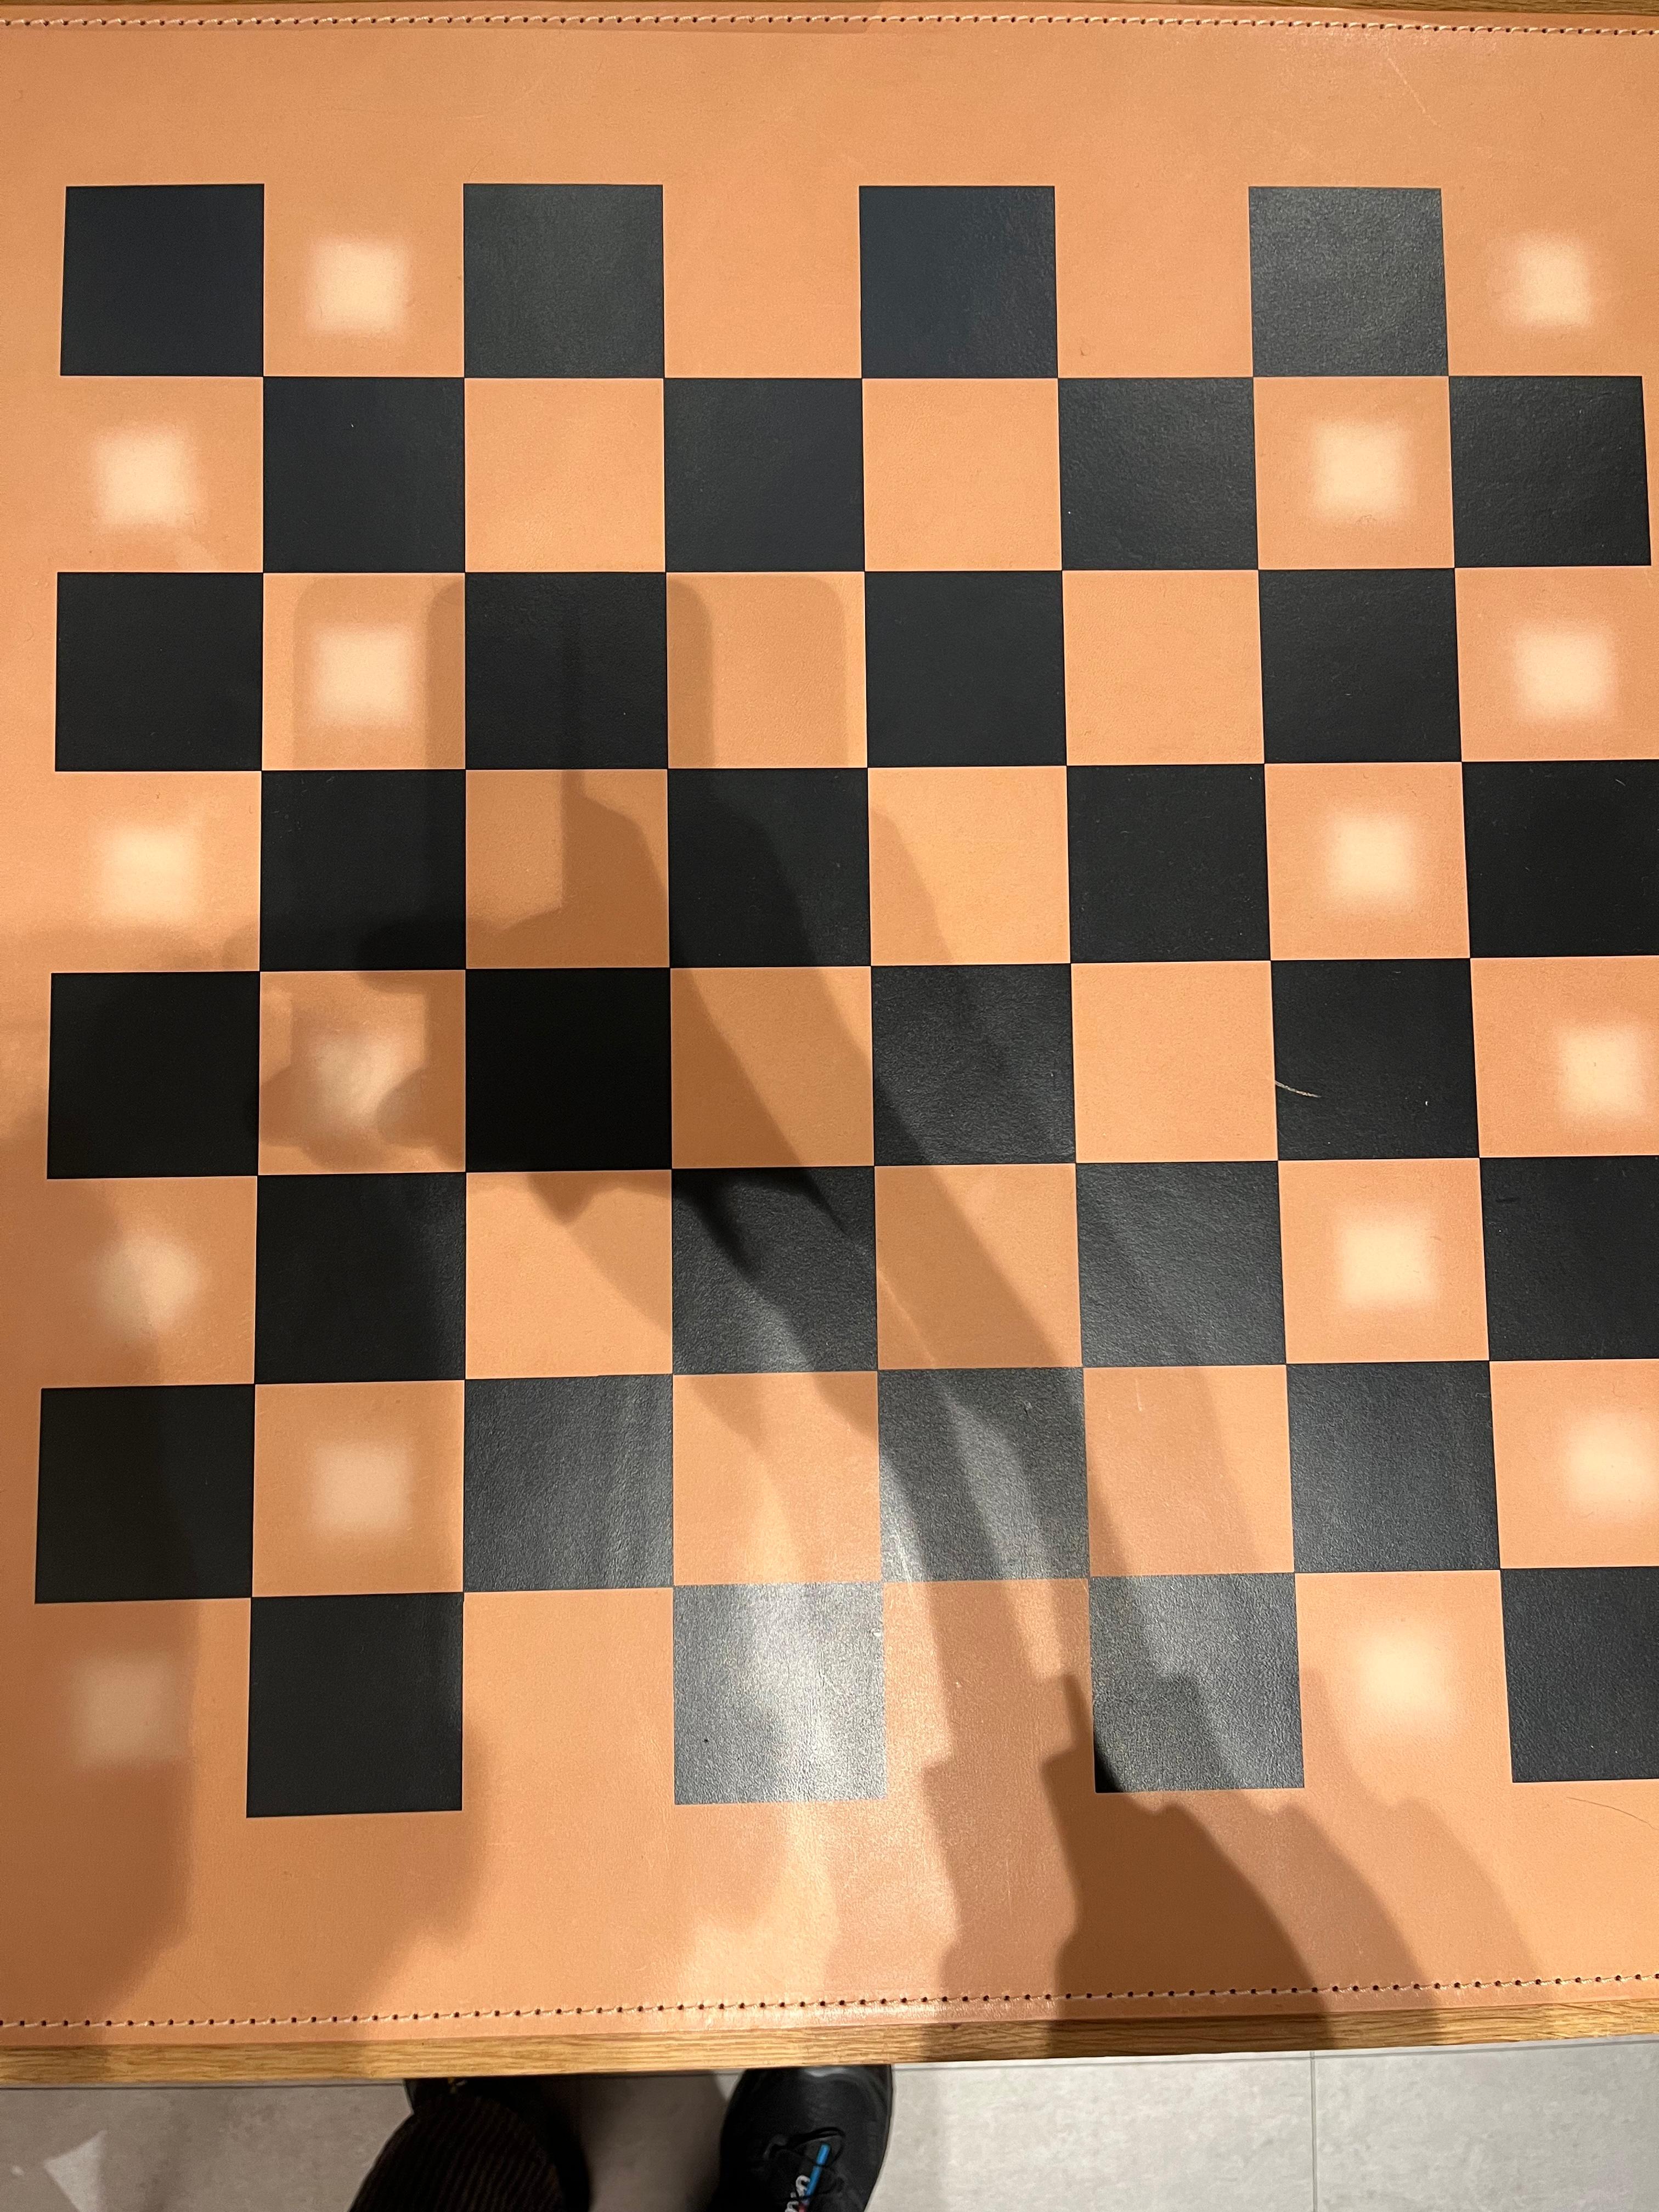 Schachfiguren, europäische Eiche klar lackiert
super-matt lackierte europäische Eiche
Farbe: tiefschwarz, Schachfiguren-Set, L240
B120 H90 mm, 16 x klar lackiert, 16 x
schwarz lackiert, HS-Code 44201190, Herkunft:
Deutschland

& 
AC22 NONA,